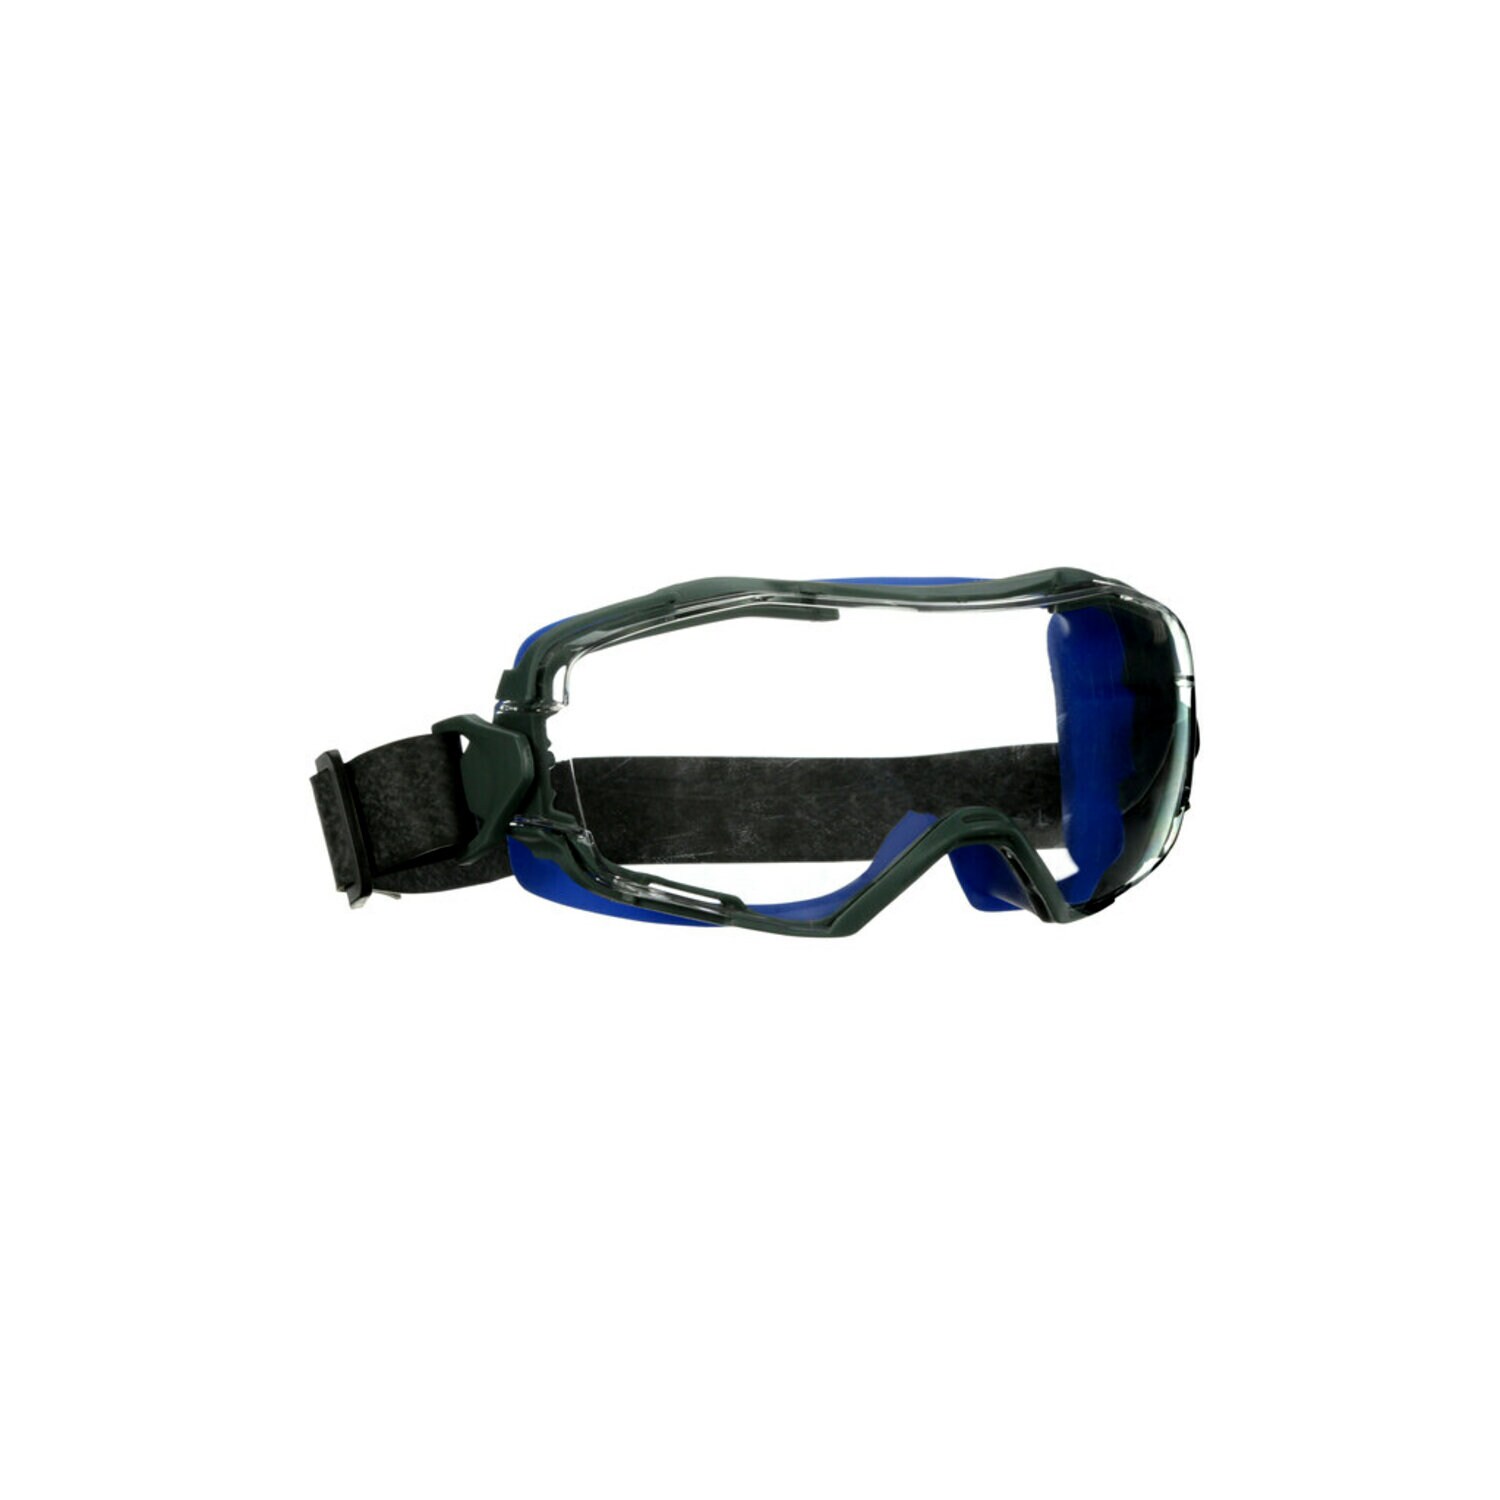 7100191928 - 3M GoggleGear 6000 Series, GG6001NSGAF-BLU, Blue Shroud, Neoprene Strap, Scotchgard Anti-Fog Coating, Clear AF-AS lens, 10ea/cs